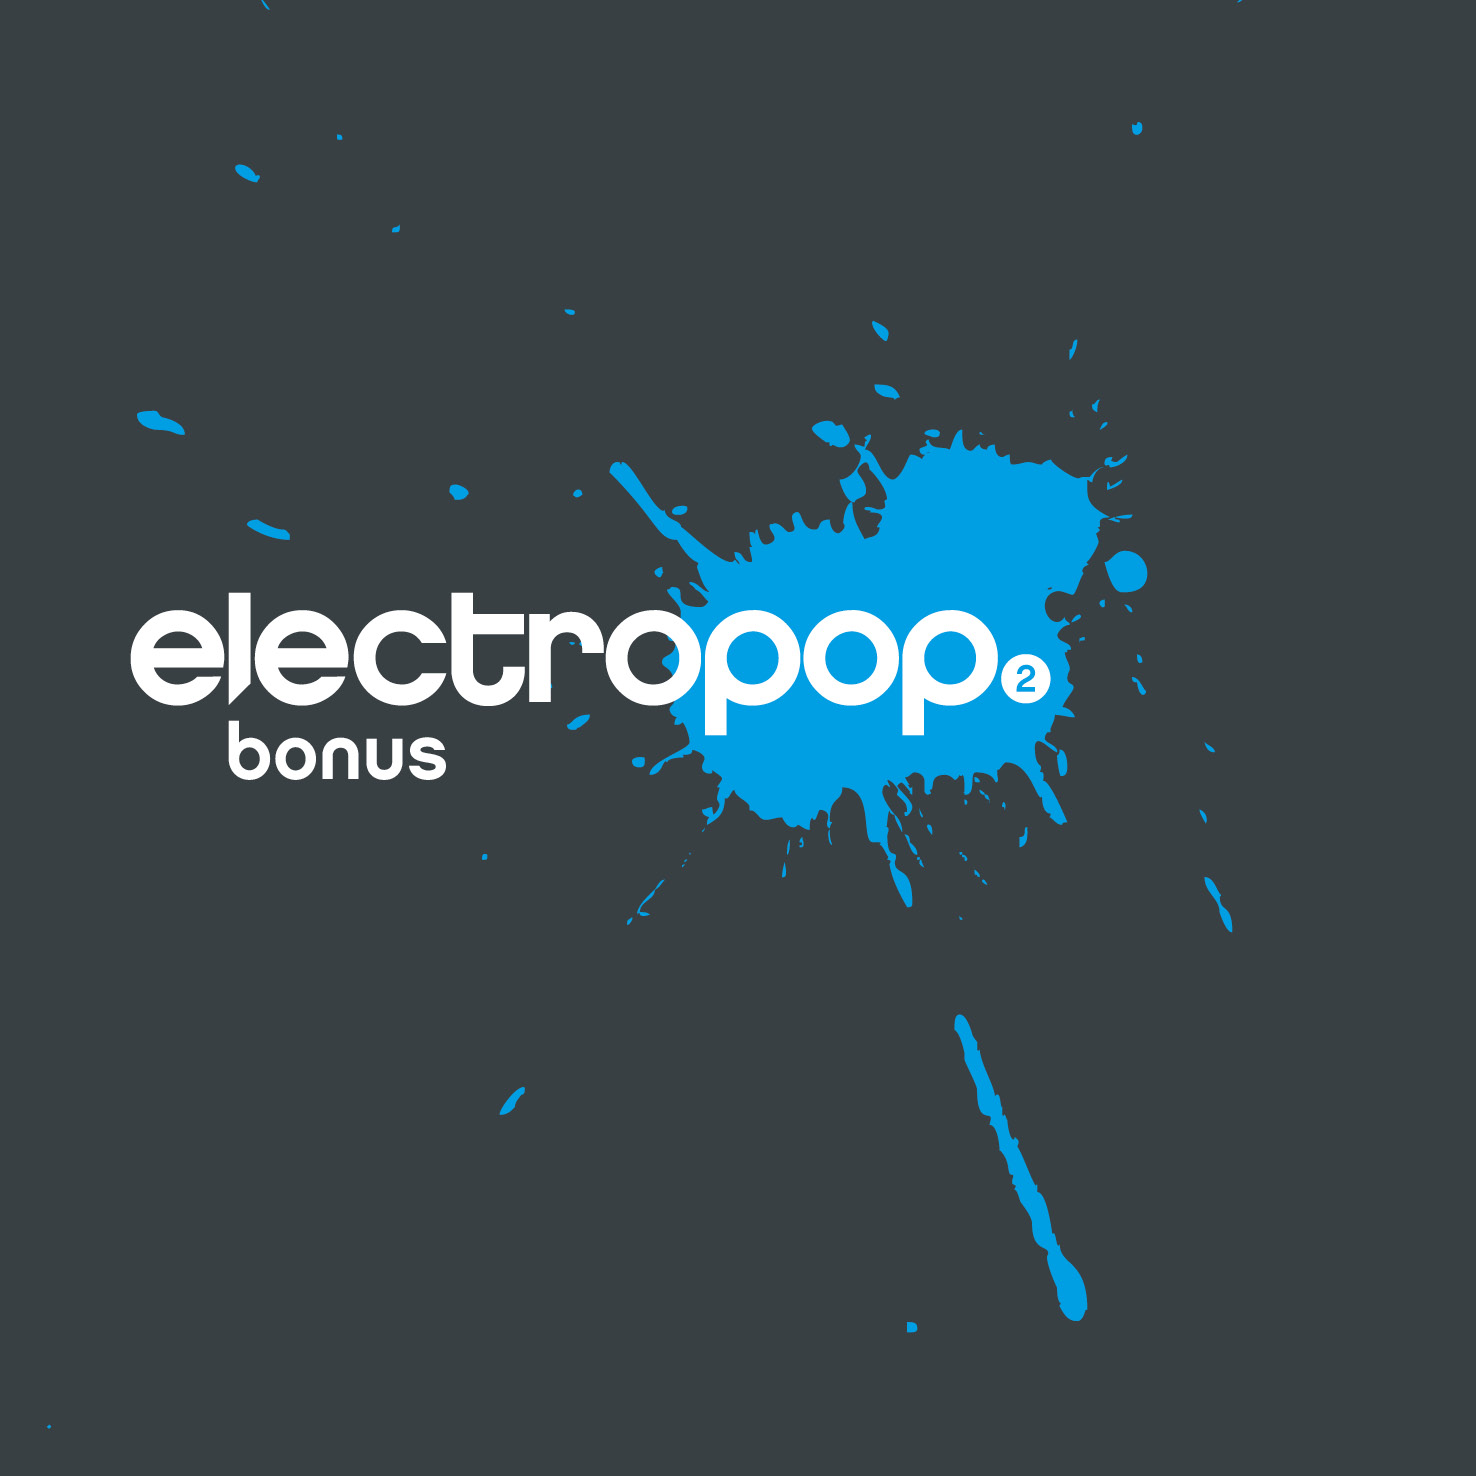 electropop.22 bonus 2